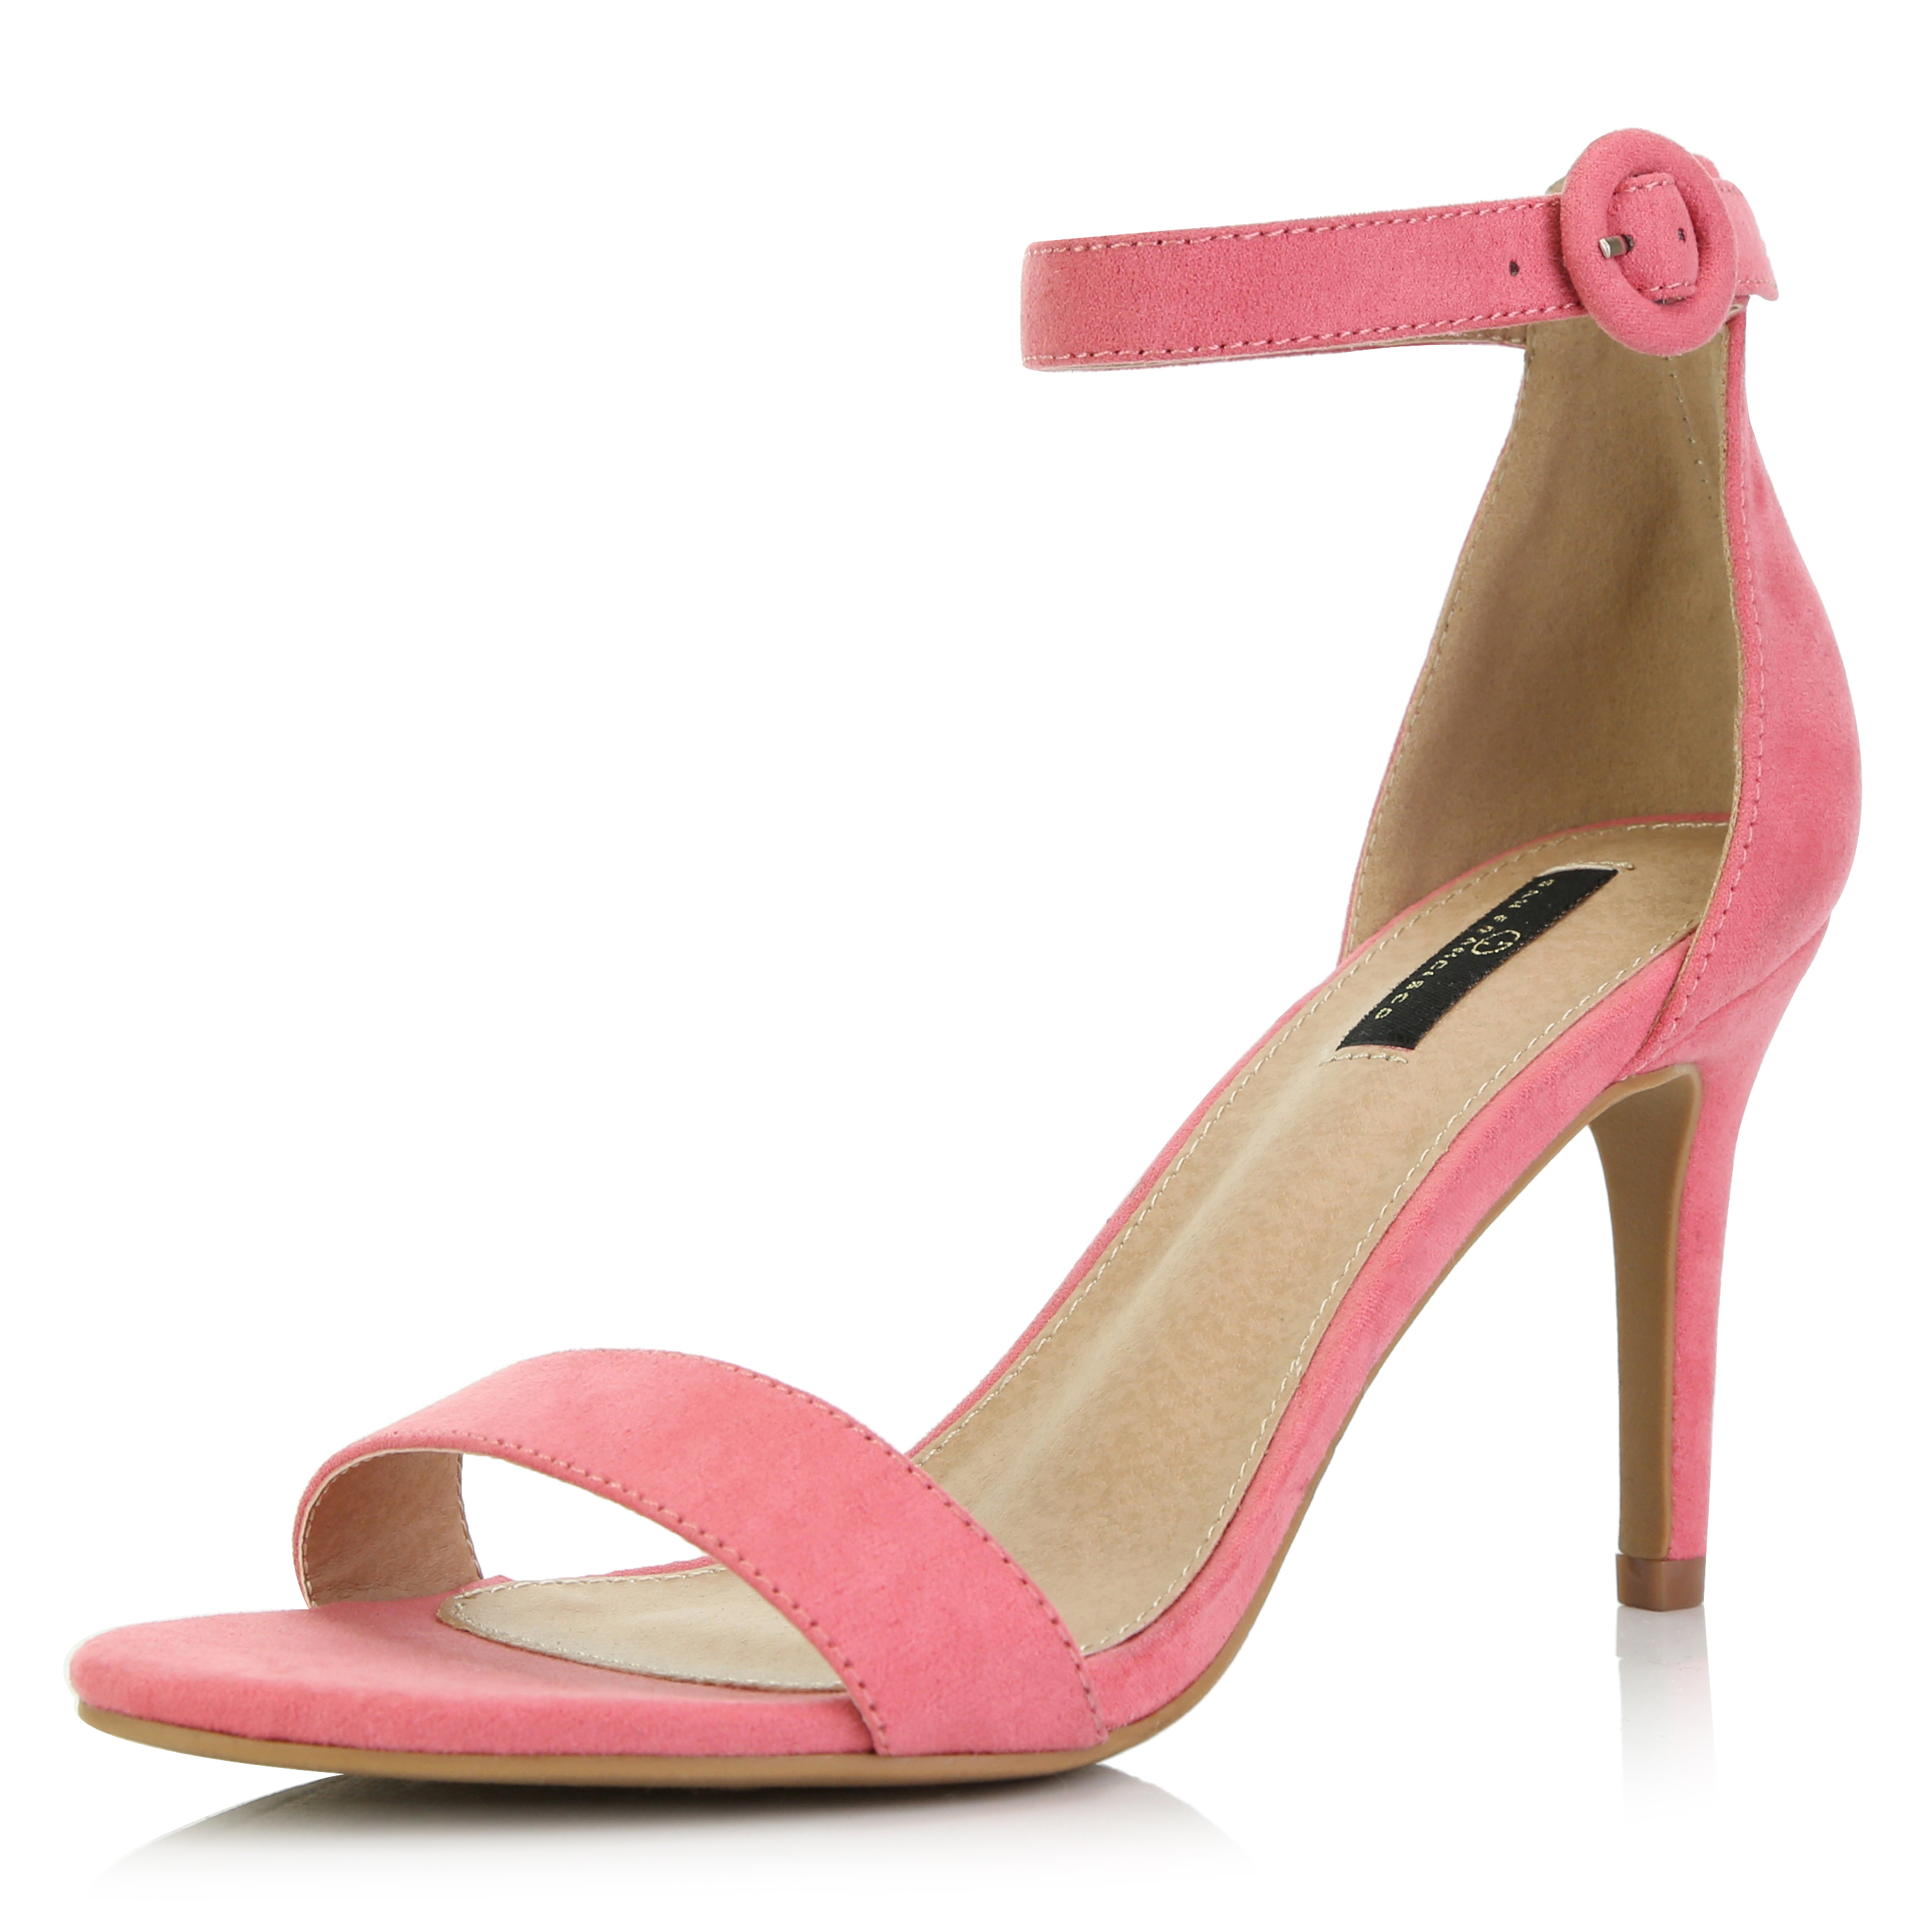 Buy > simple heels sandals > in stock